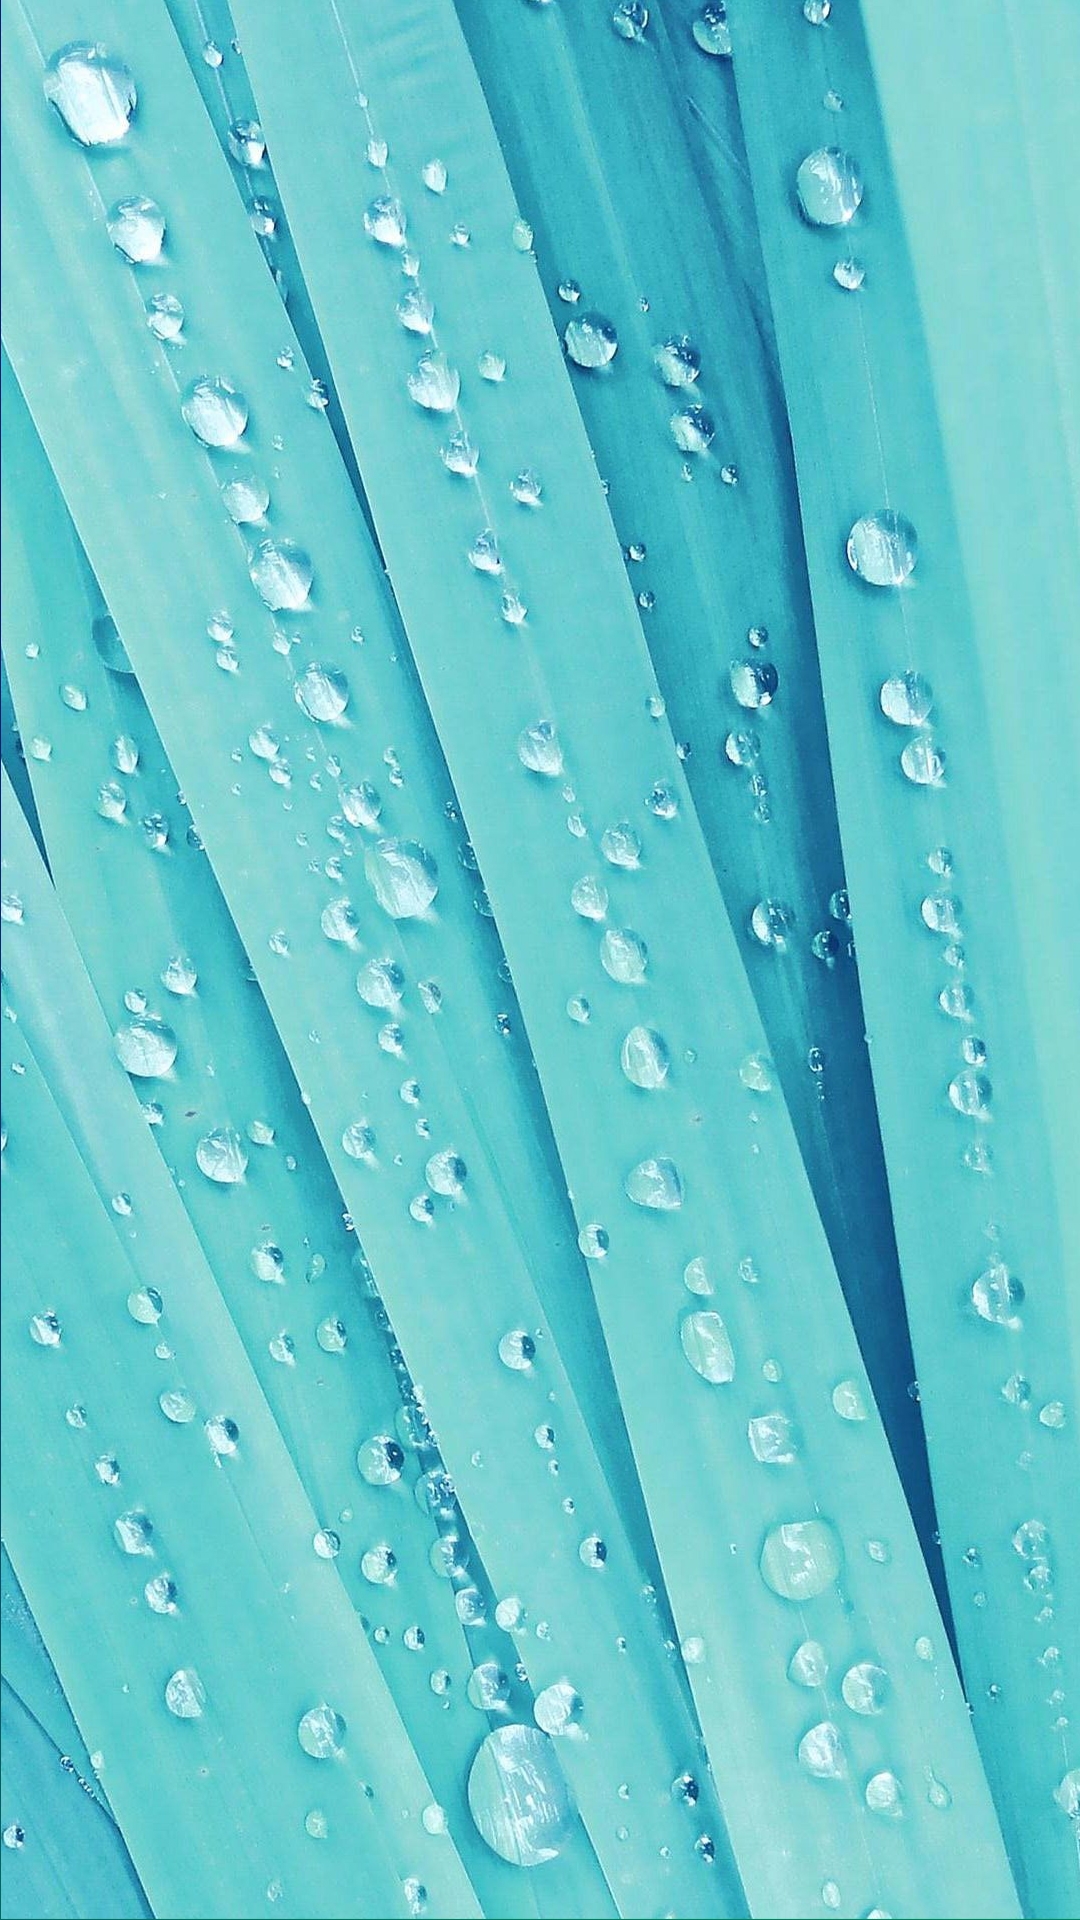 Light Blue Wet Leaves wallpaper